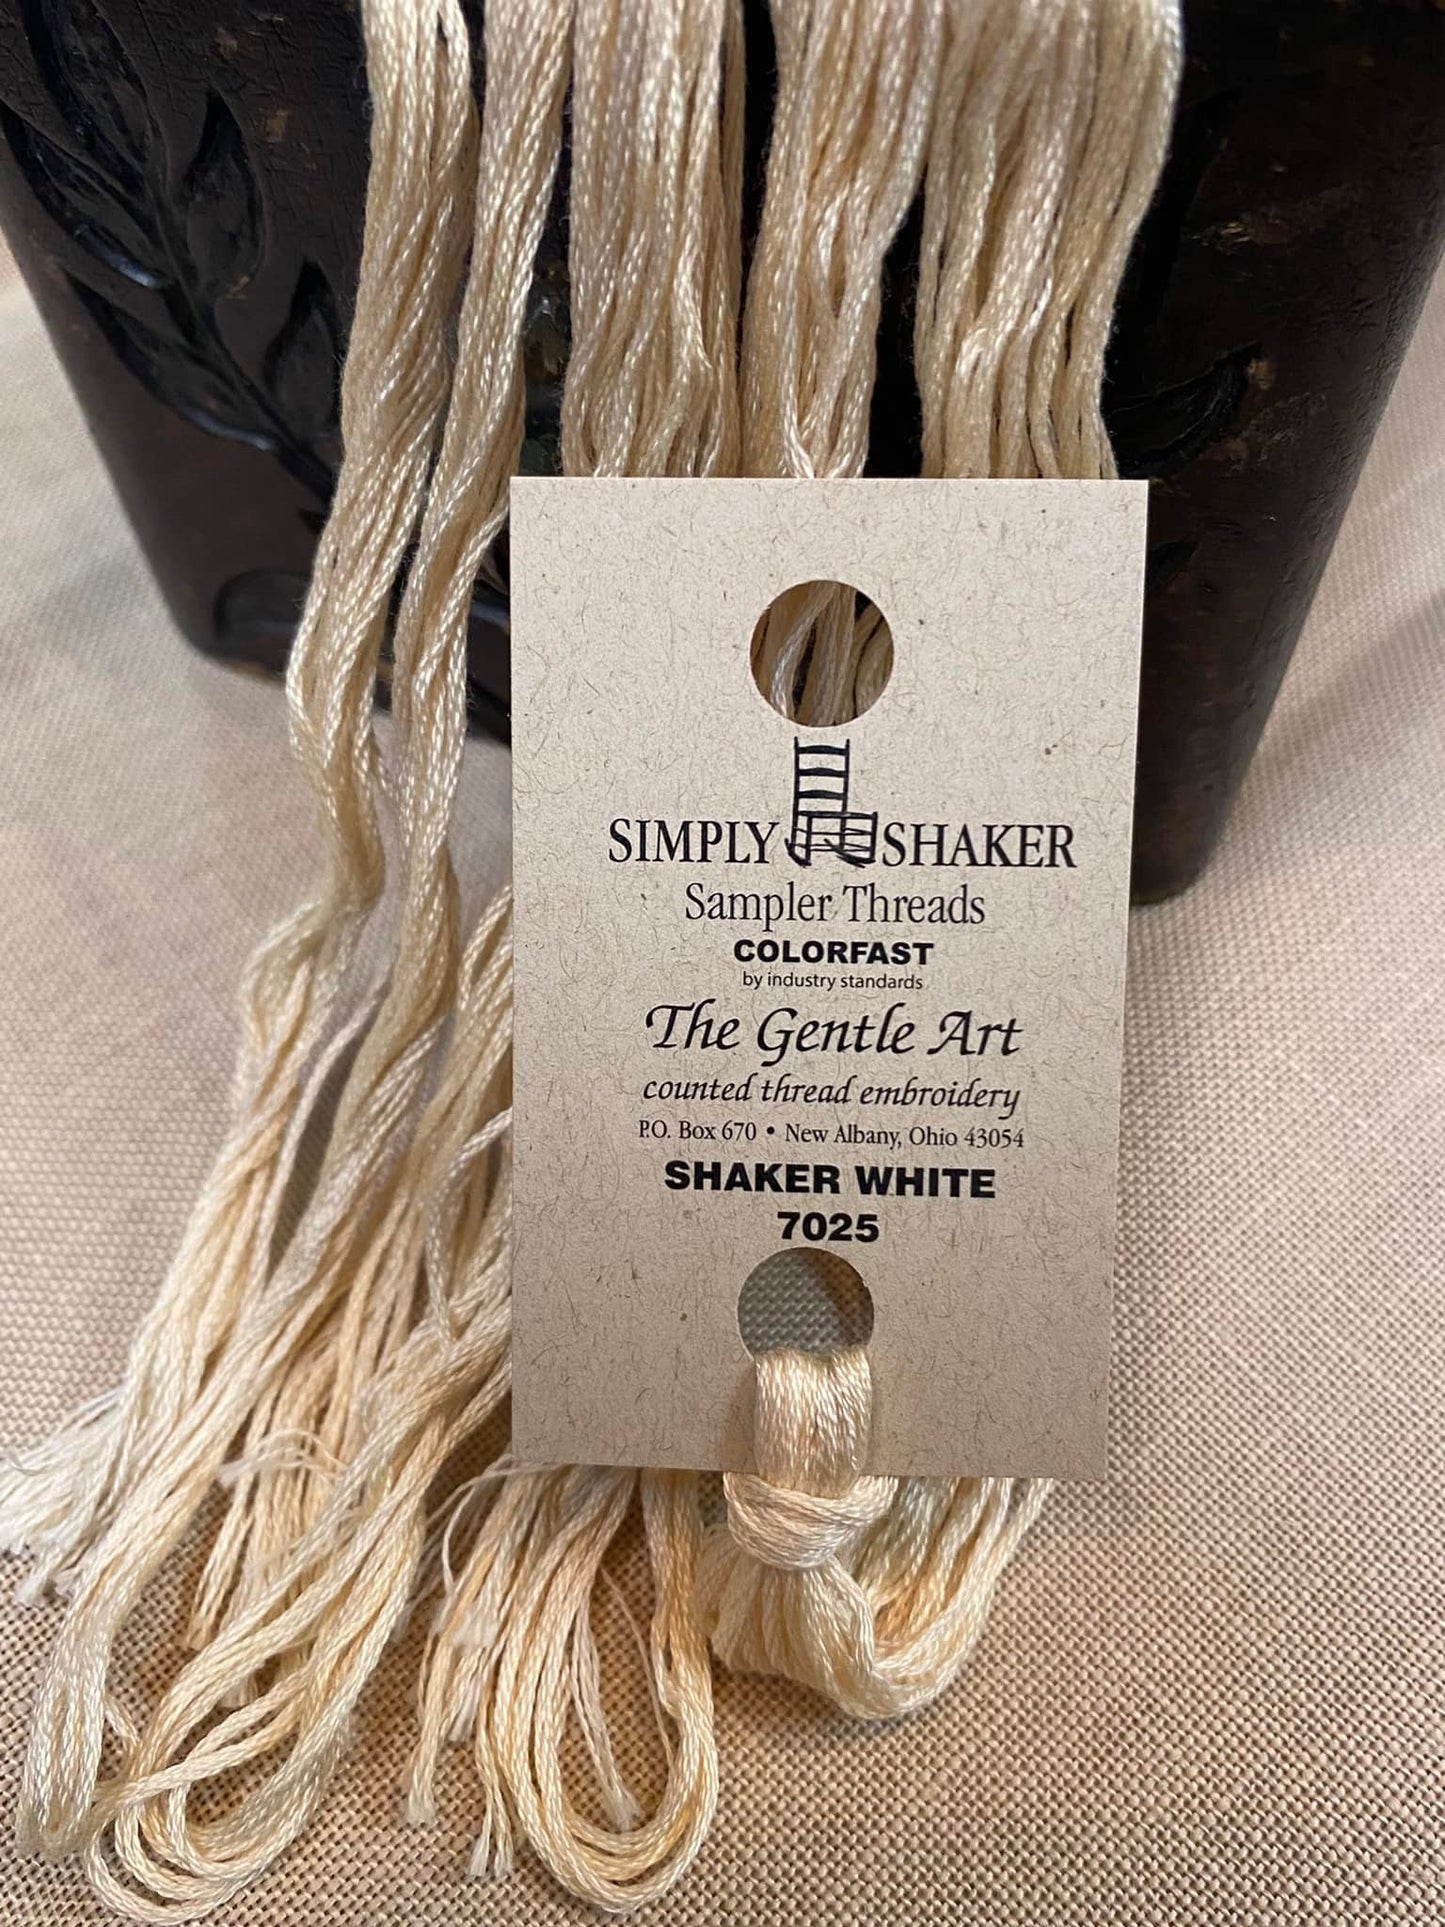 Shaker White, 7025, Sampler Threads